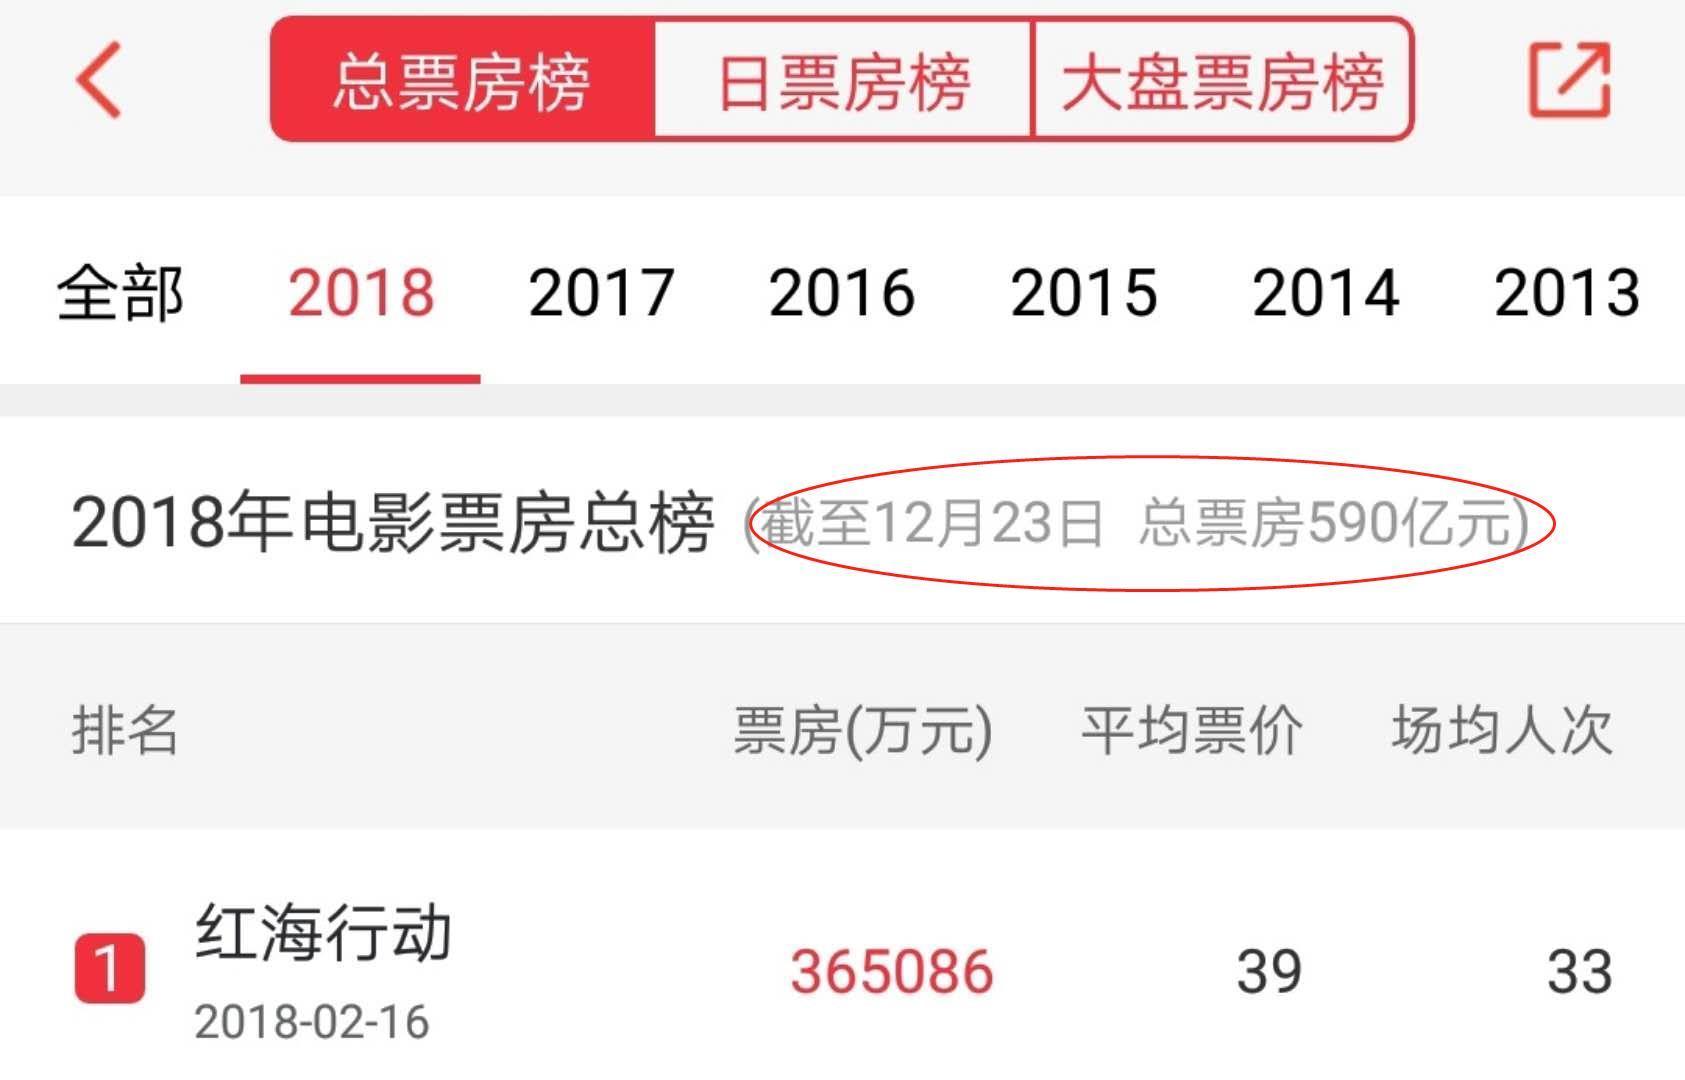 2018年中国电影票房已超去年!全年总票房破6